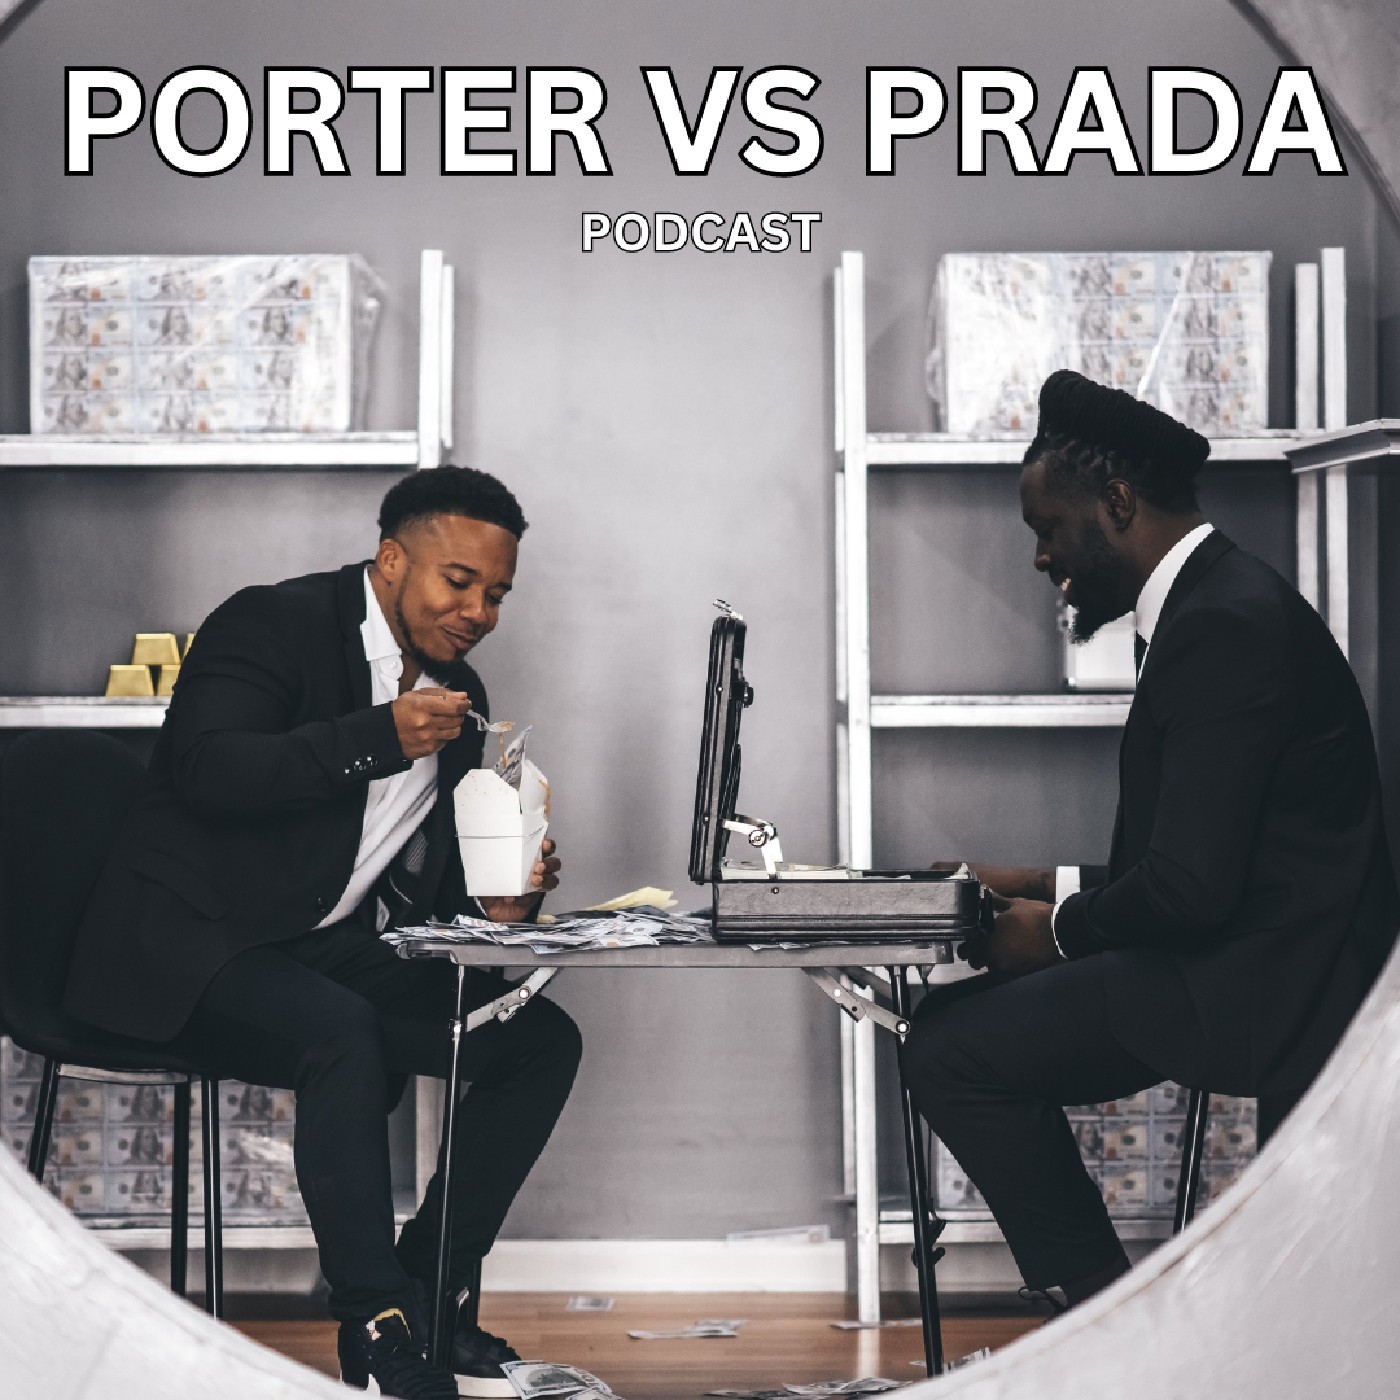 PORTER VS PRADA